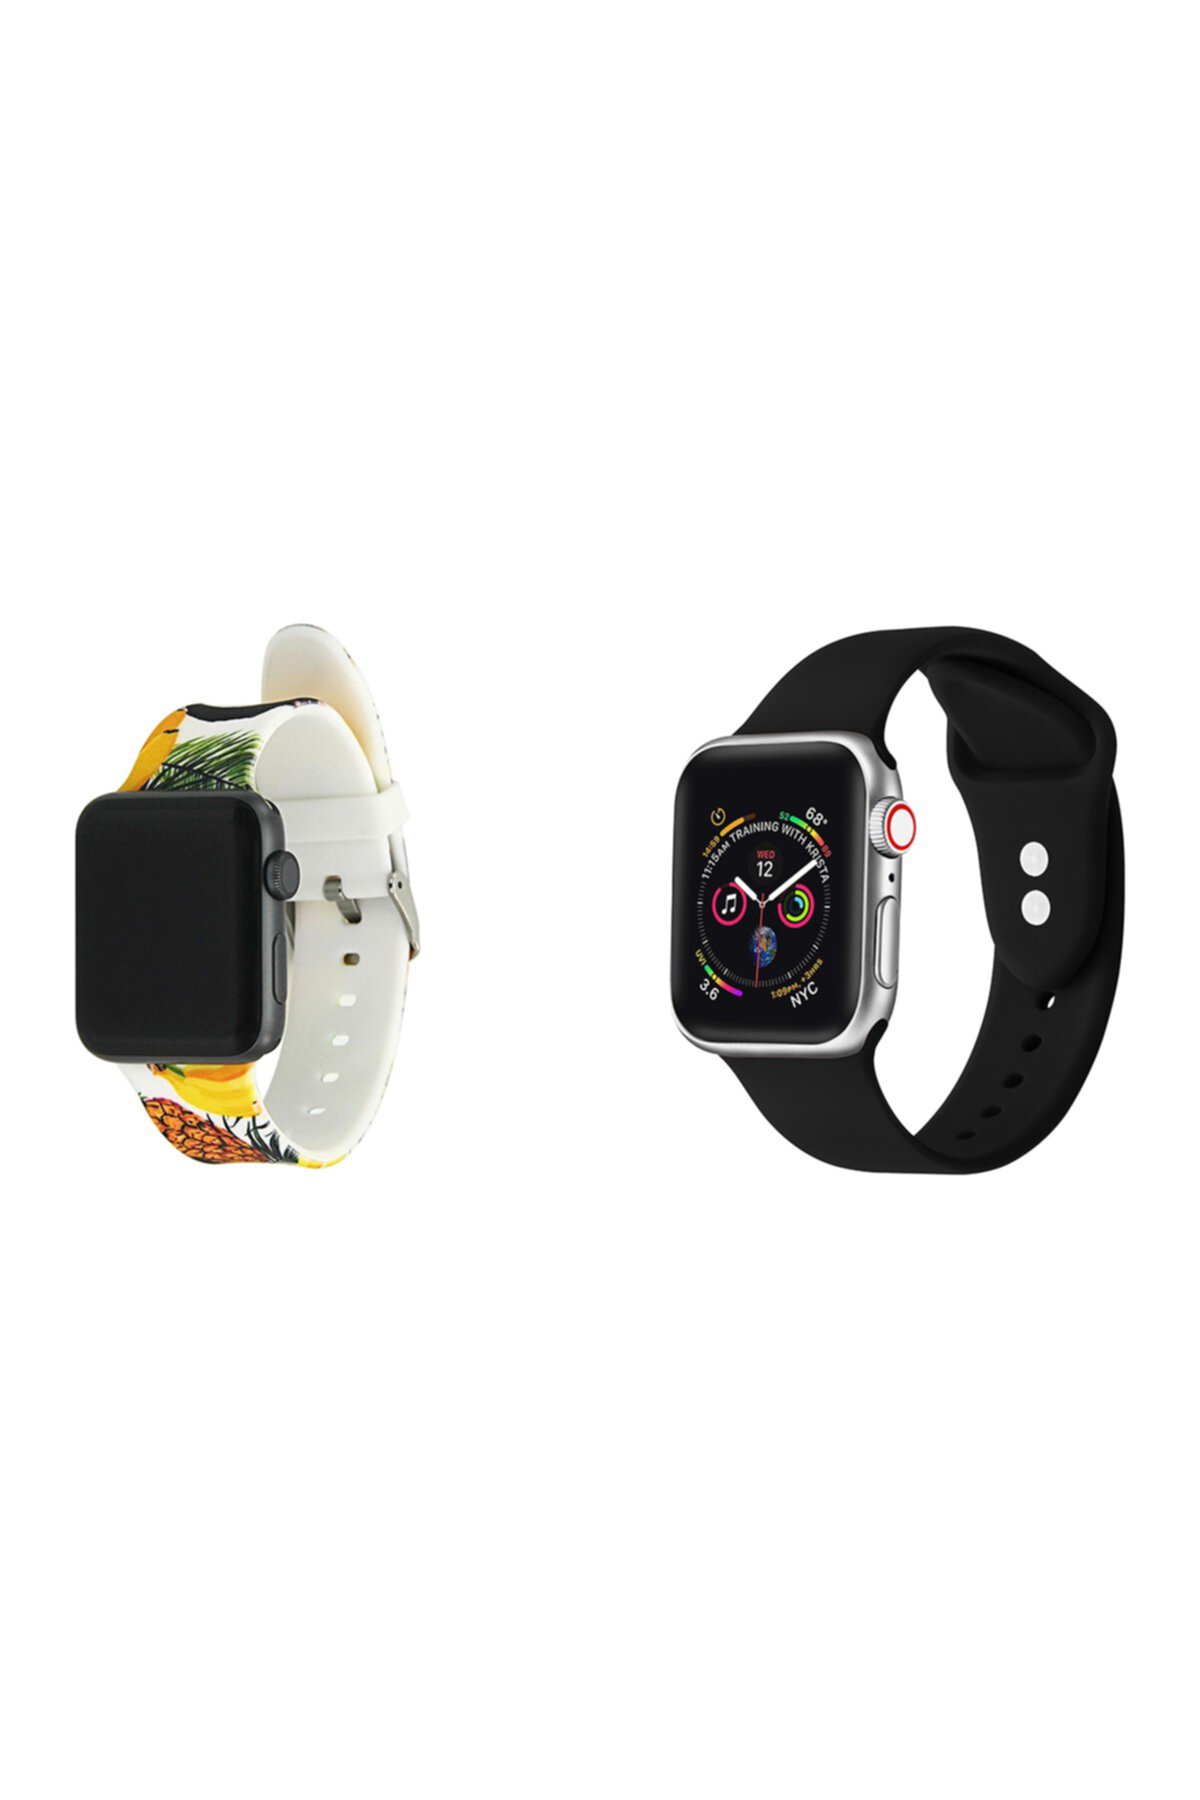 Мульти силиконовые ремешки для 42-мм / 44-мм Apple Watch Series 1, 2, 3, 4, 5 - упаковка из 2 POSH TECH